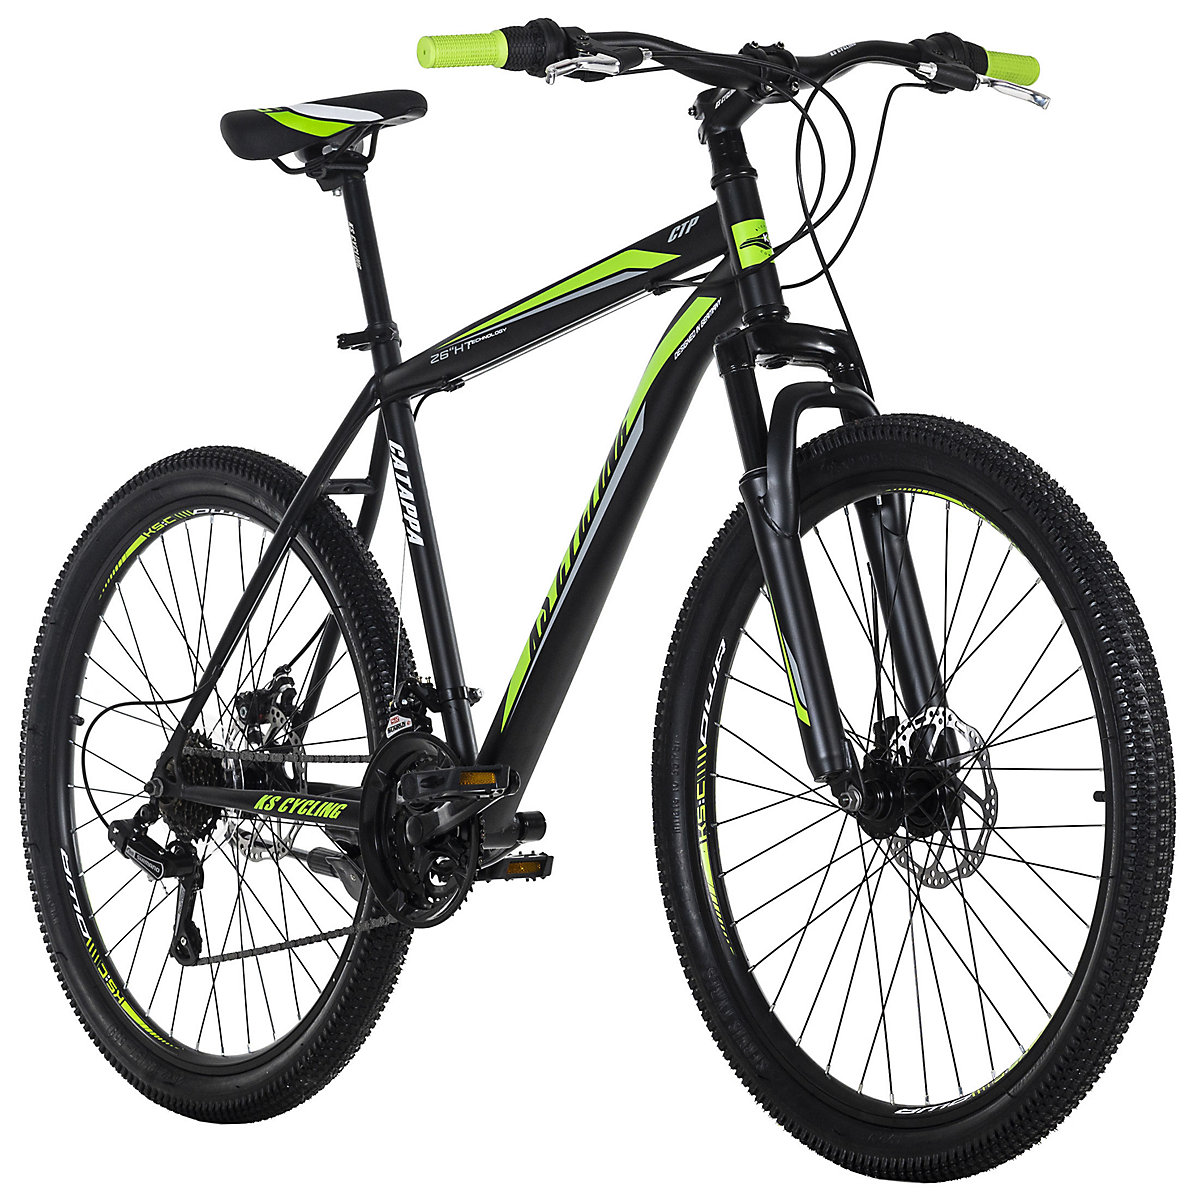 KS Cycling KS Cycling Mountainbike Hardtail 26 Zoll Catappa schwarz-grün Rahmenhöhe: 50 cm schwarz/grün